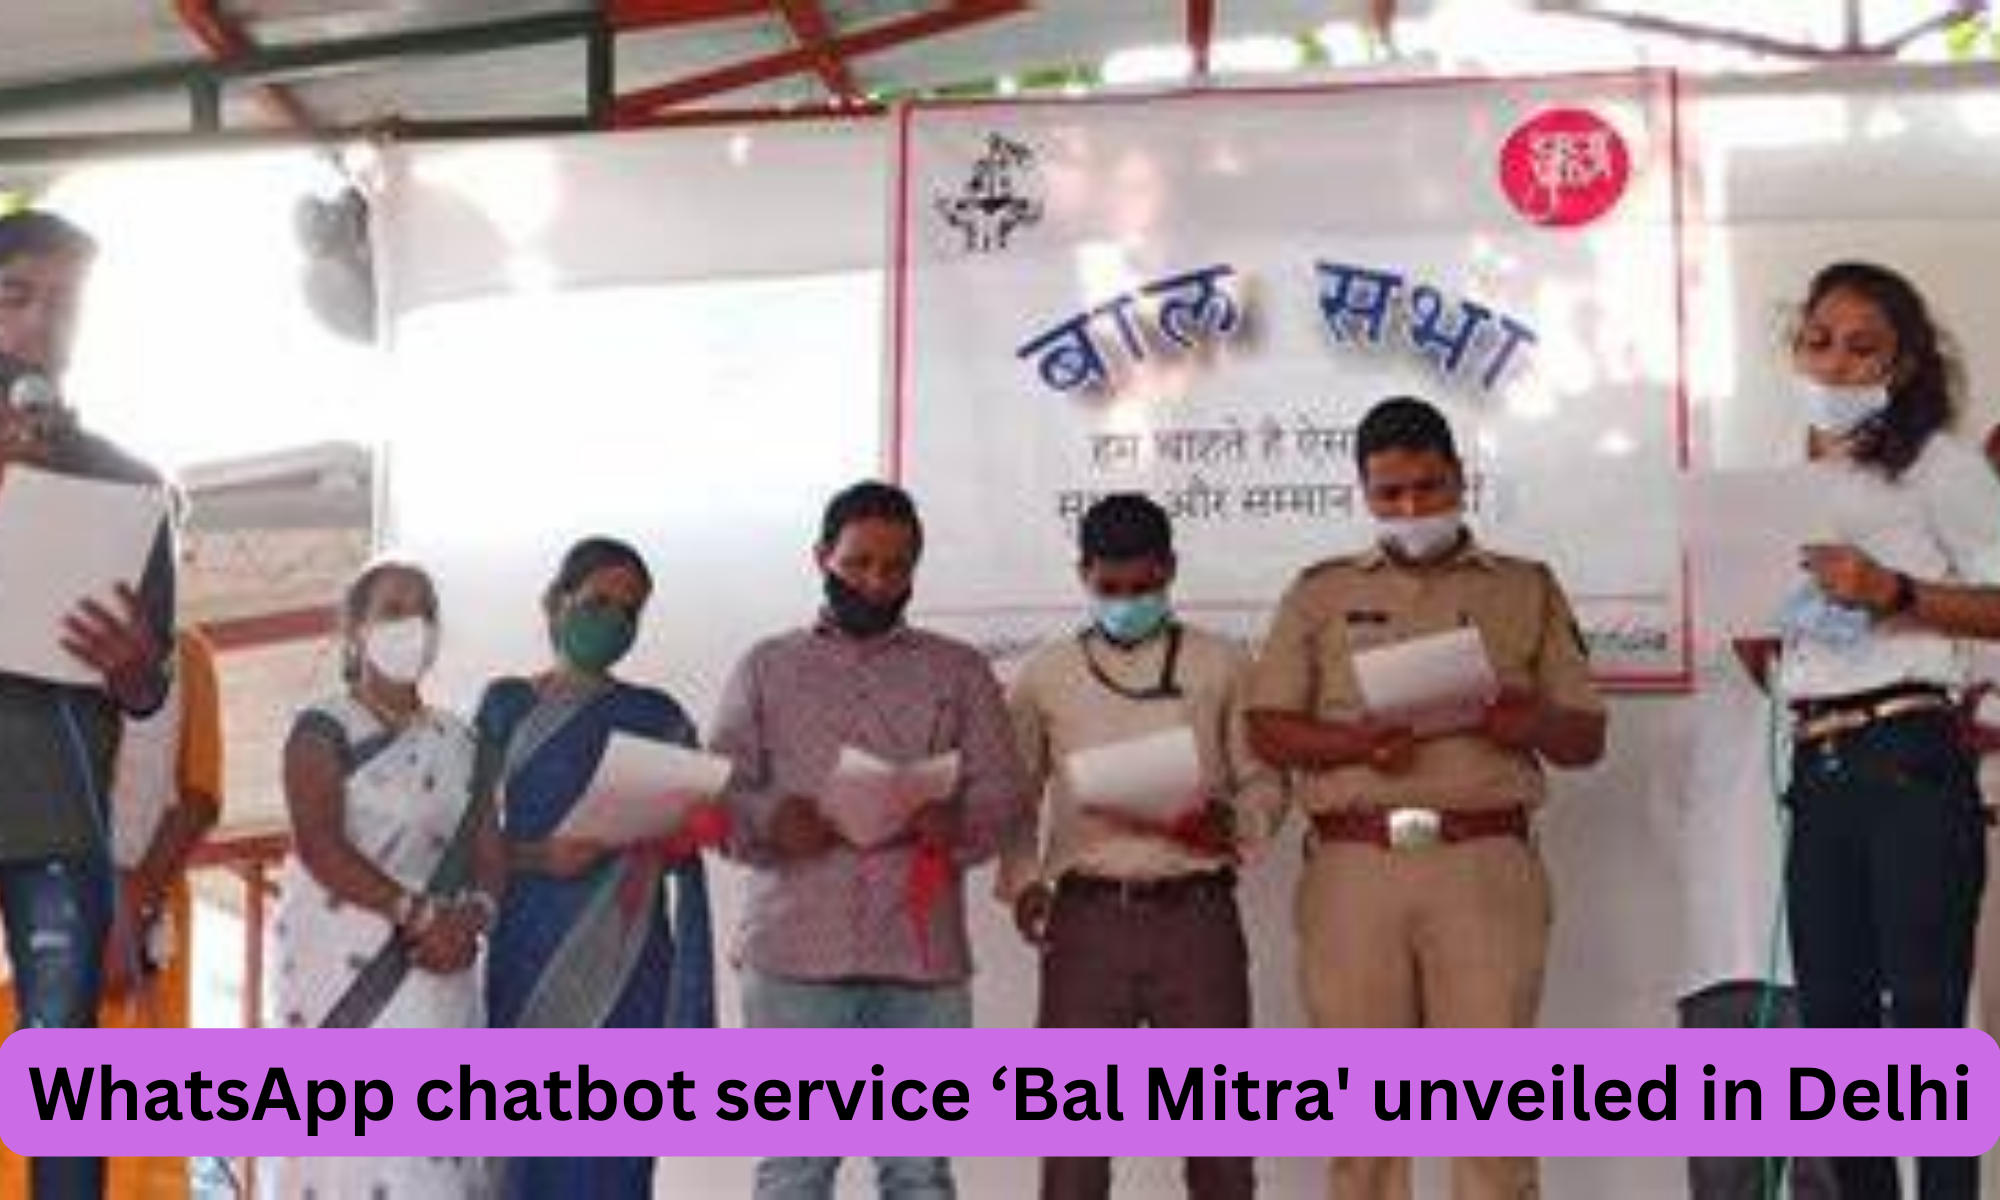 Delhi child rights body unveils WhatsApp chatbot service 'Bal Mitra'_40.1